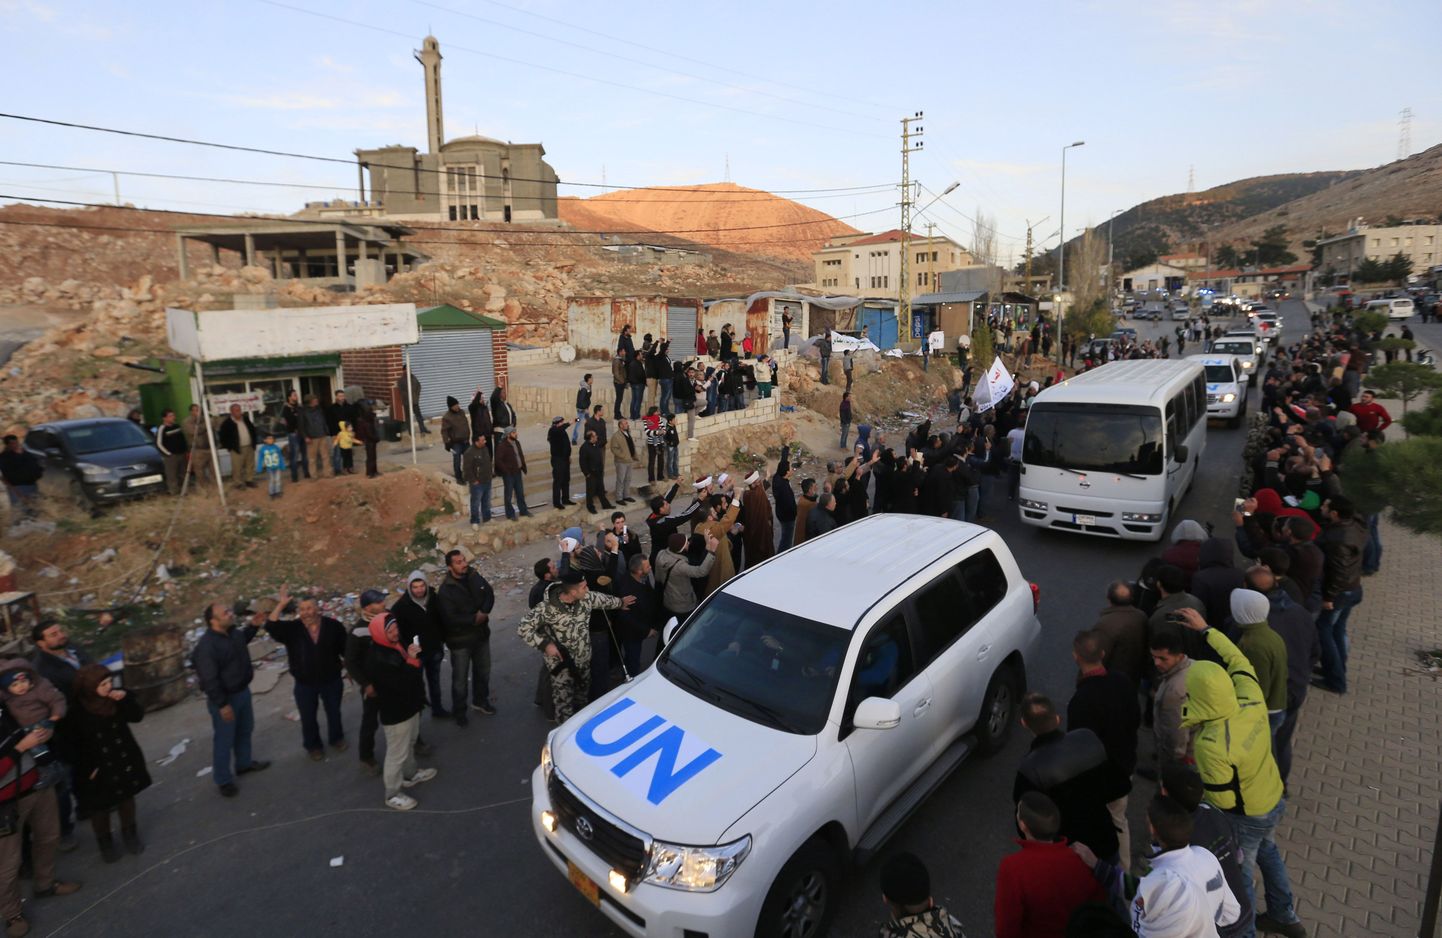 Konvoi Süüria opositsiooni võitlejatega ületamas Masnaa piiripunkti.